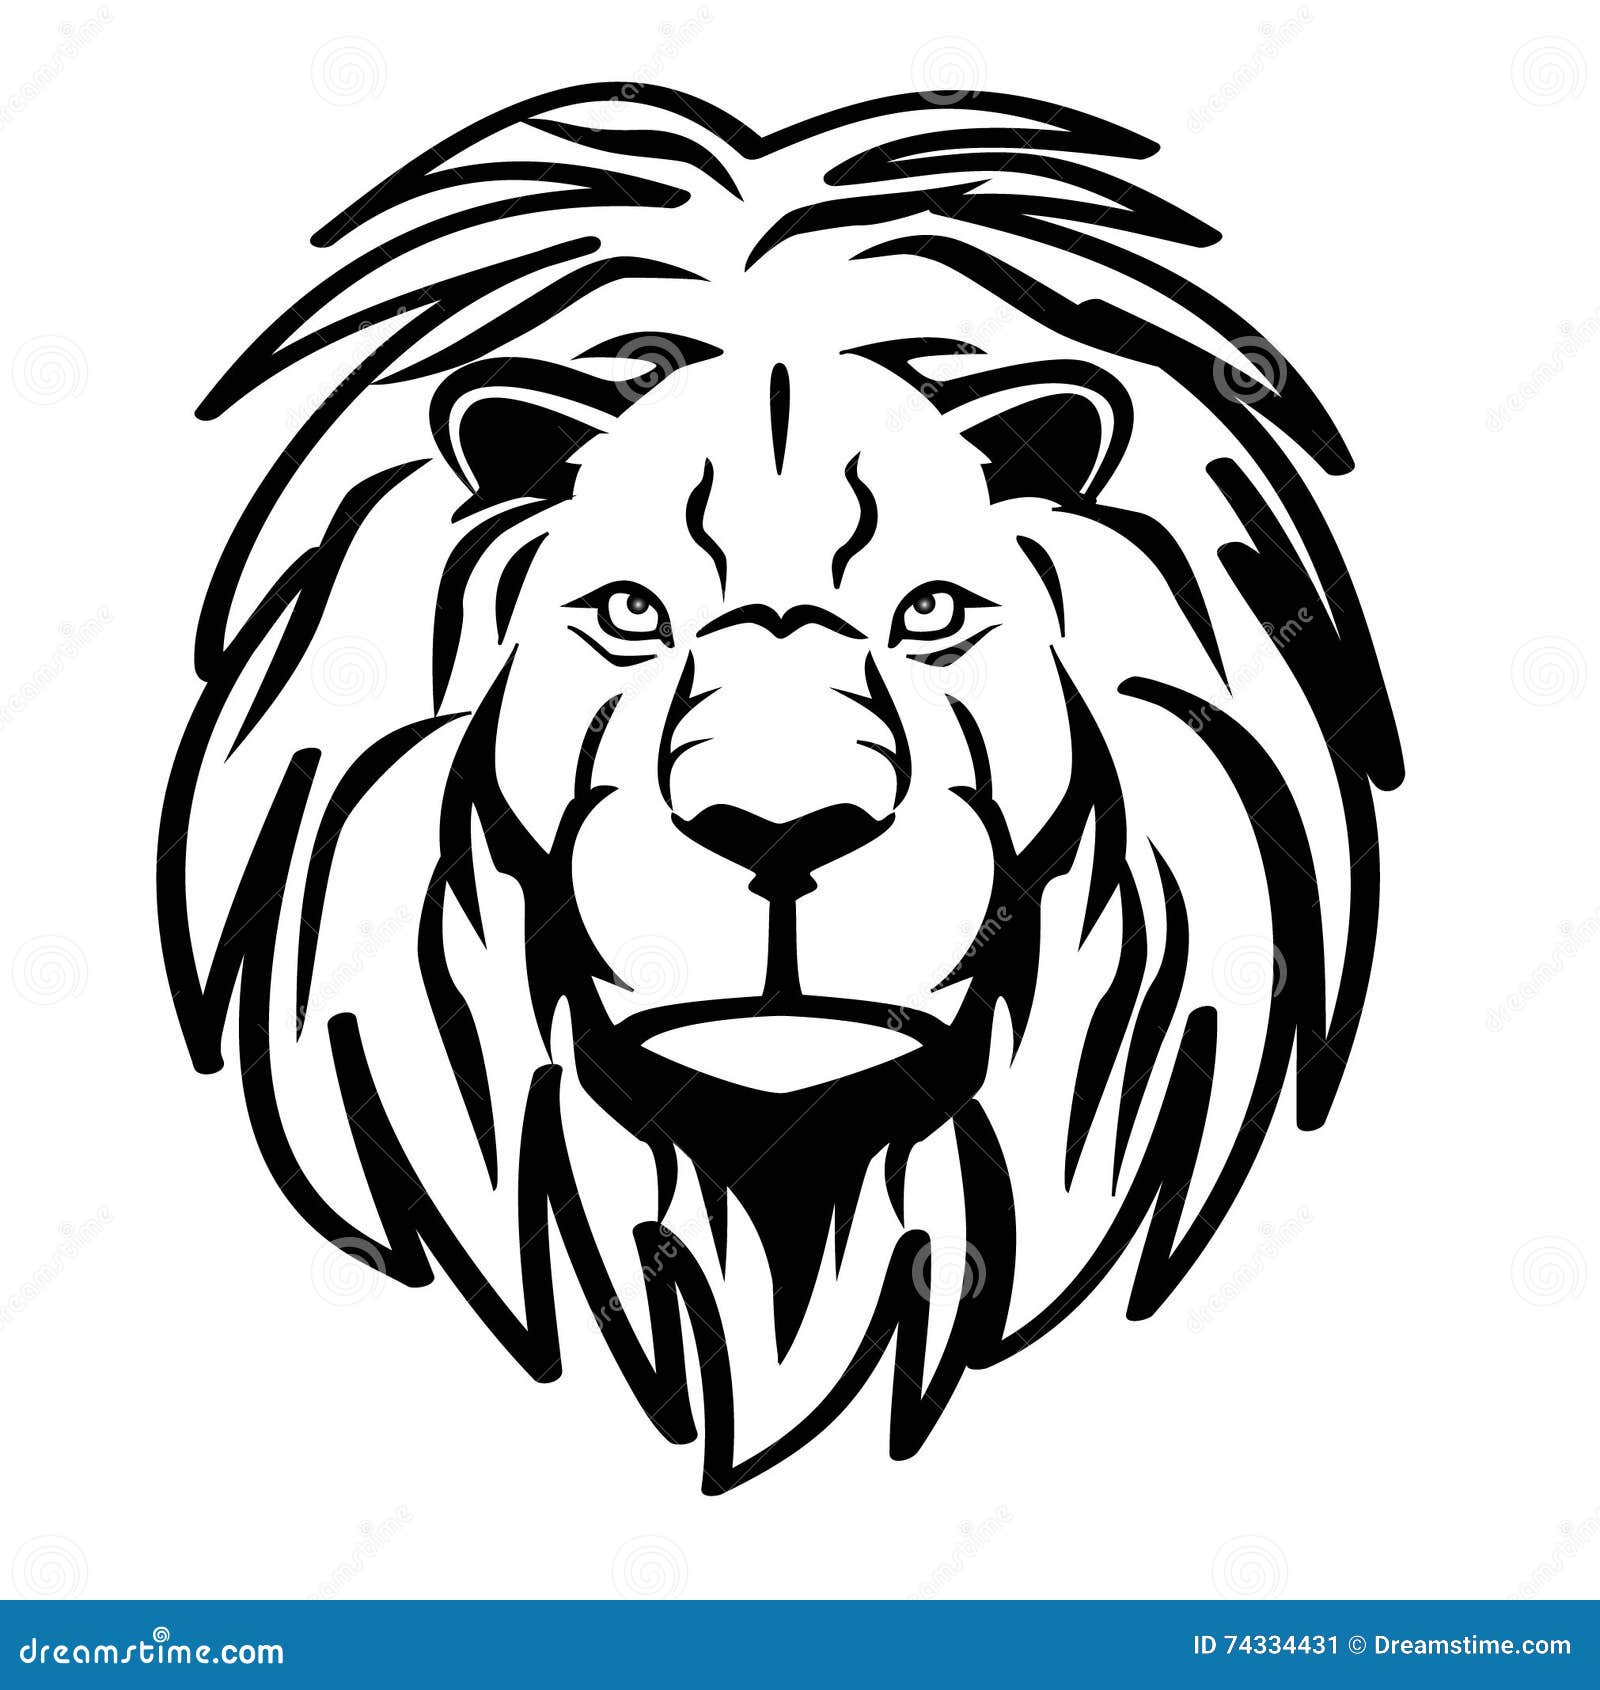 Lion stock vector. Illustration of lion, sketch, black - 74334431